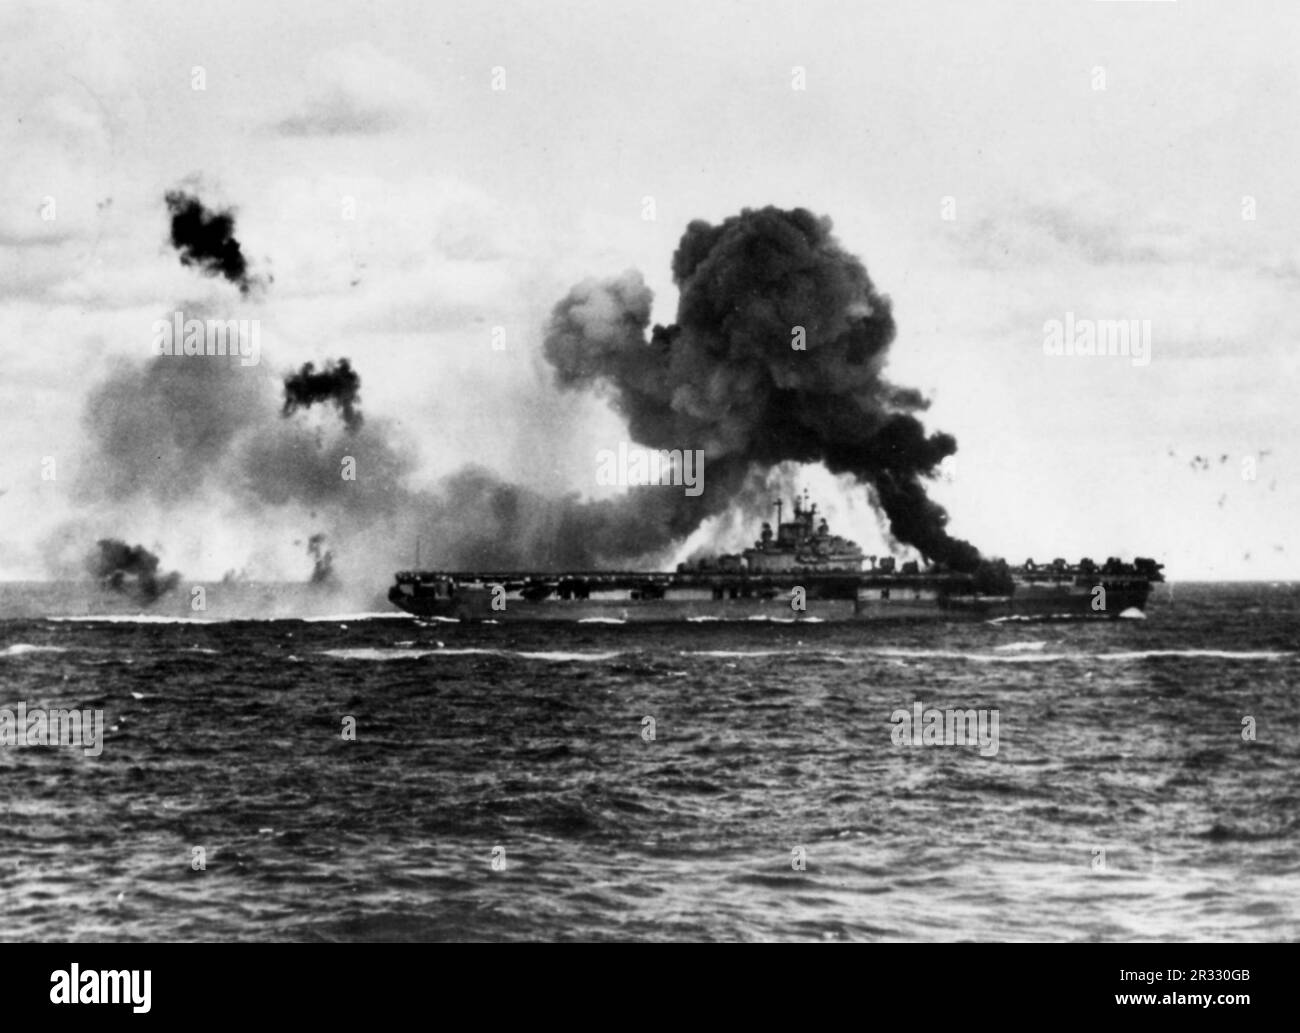 Die USA Der Flugzeugträger USS Intrepid (CV-11) der Marine brannte, nachdem das Schiff von zwei japanischen Kamikaze-Flugzeugen getroffen wurde, am 16. April 1945. Als Japan Ende 1944 mit einer Niederlage konfrontiert war, entschied es sich, US-Schiffe mit Selbstmordattentaten, bekannt als Kamikaze, zu zerstören. Diese Angriffe waren eine starke physische und psychologische Waffe und versenkten insgesamt 47 Schiffe zu einem Preis von mehr als 3000 Piloten und Flugzeugen. Ende 1944 war die US-Marine so groß, dass die Verluste unbedeutend waren und den Verlauf des Krieges nicht veränderten. Stockfoto